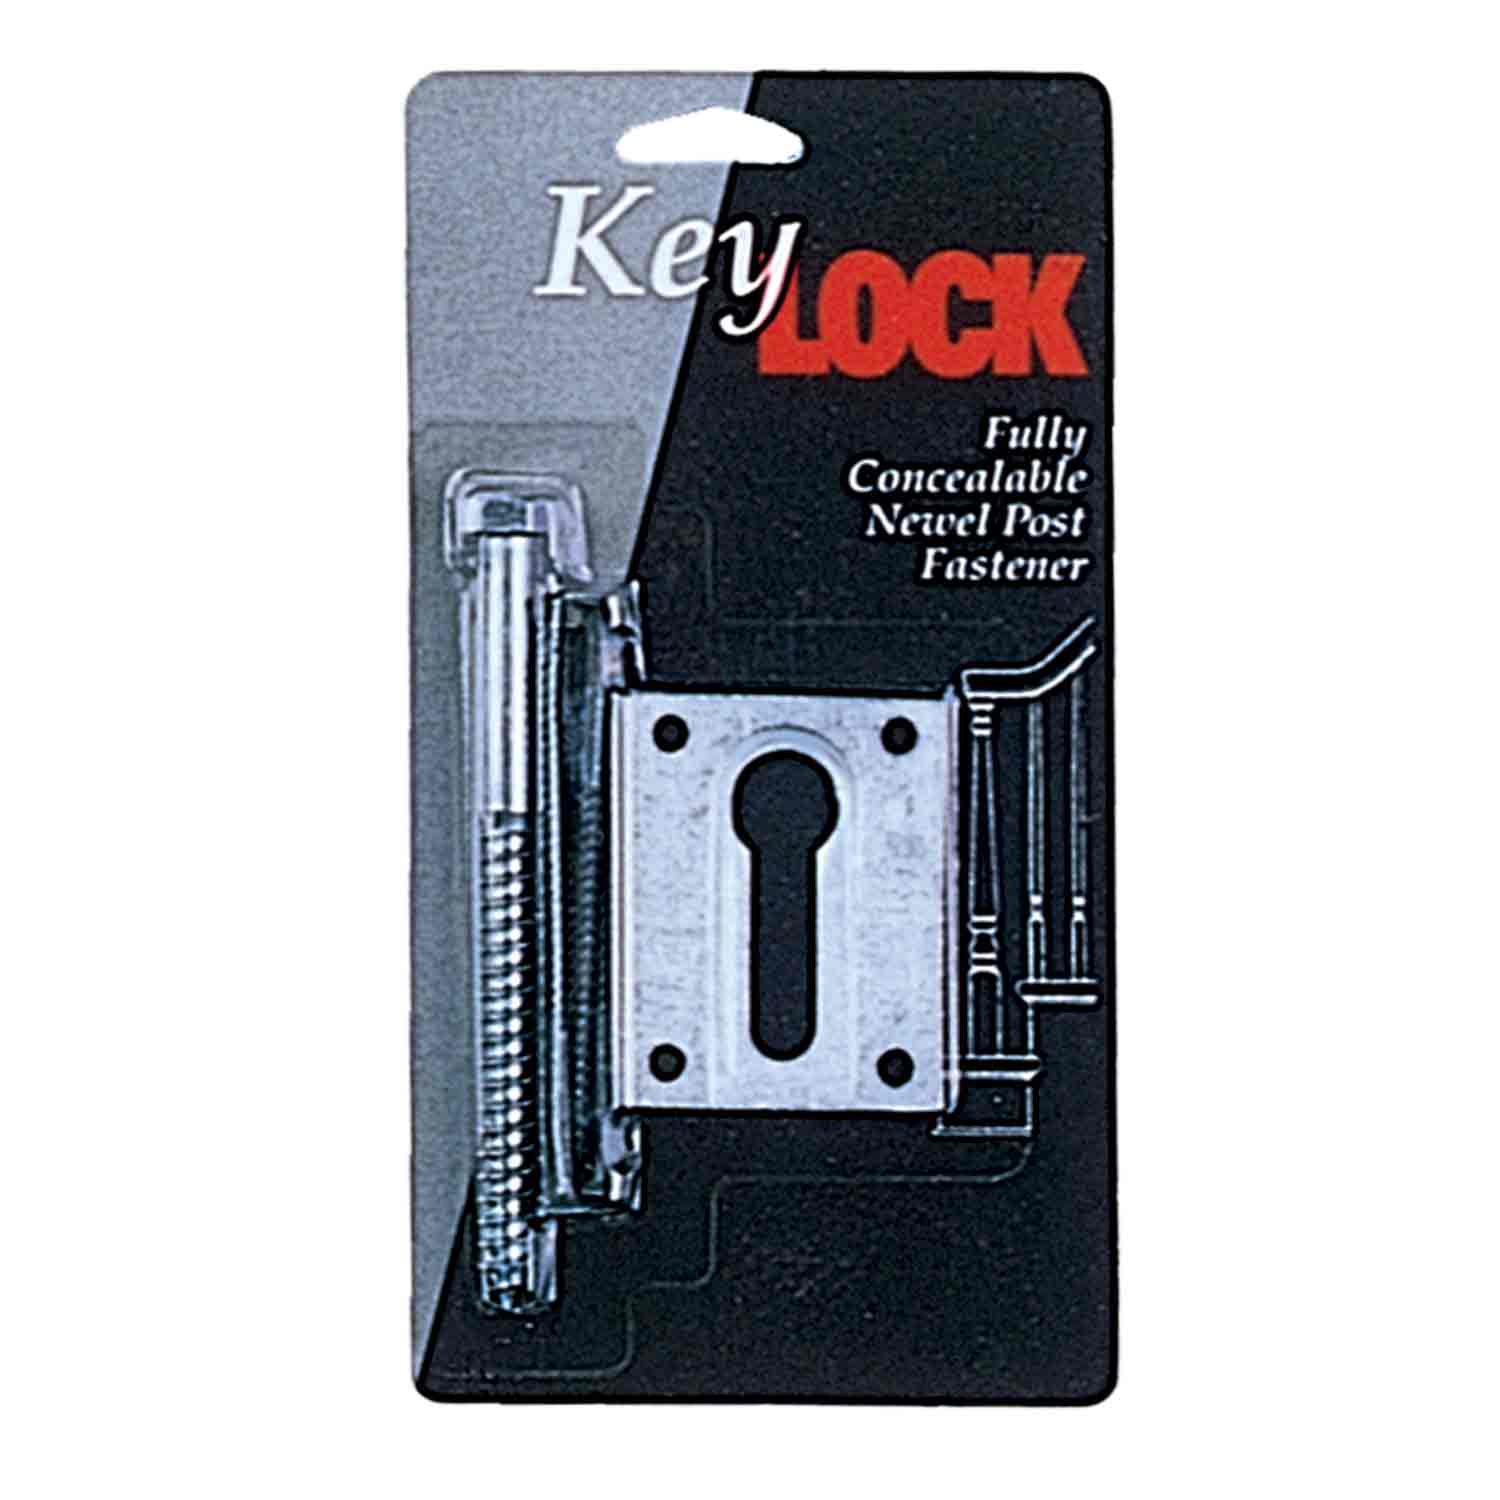 lj-3005 keylock newel post fastener